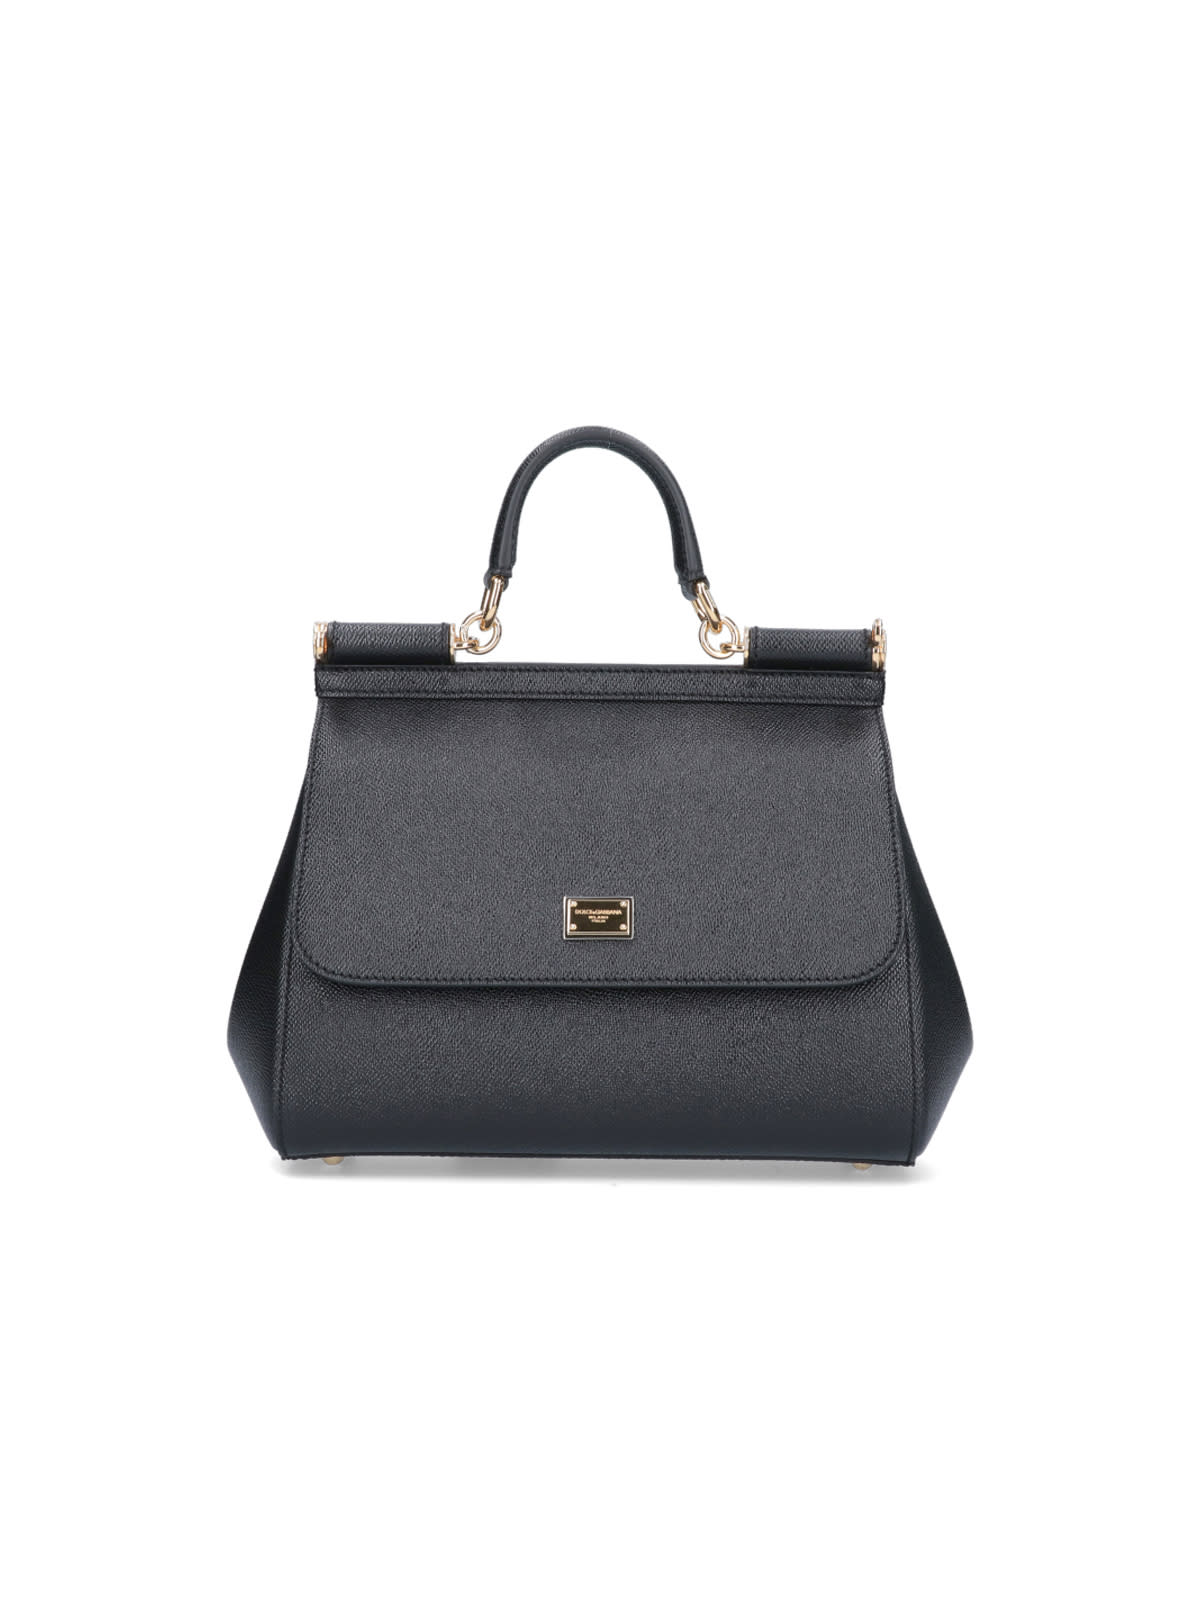 Dolce & Gabbana - Medium Sicily Bag In Black